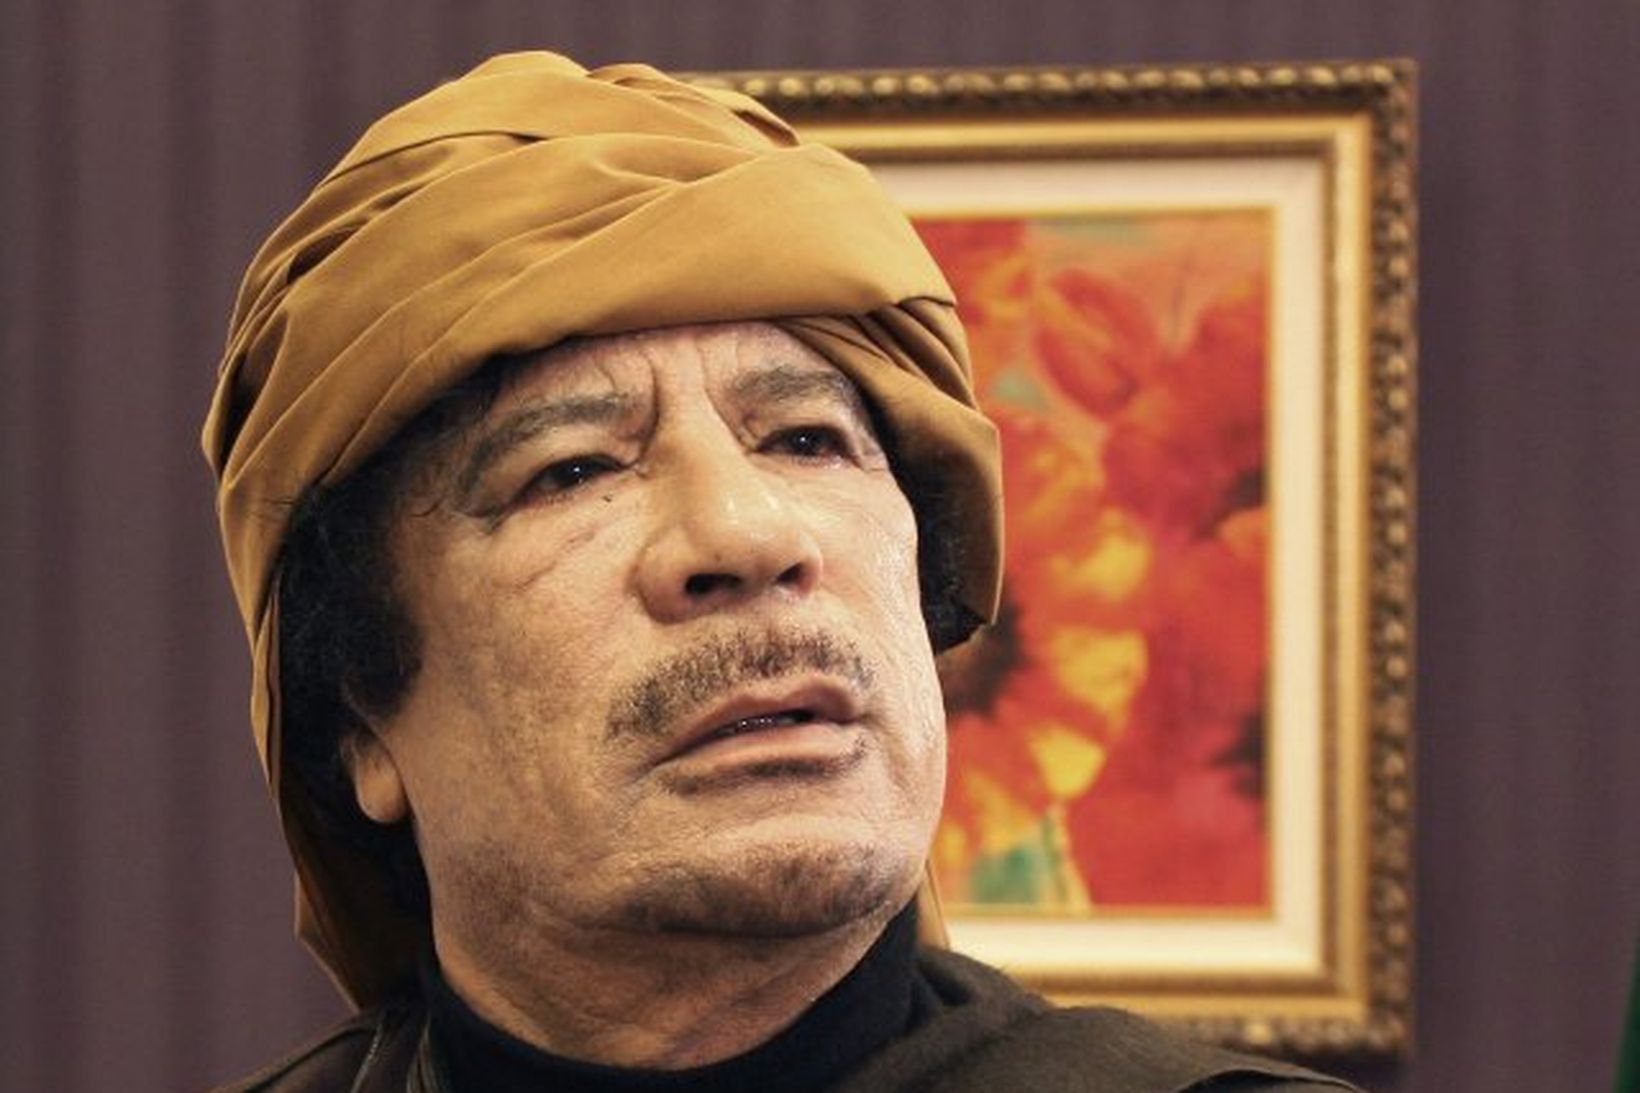 Muammar Gaddafi líkir loftárásum bandamanna við árásir Hitlers í heimsstyrjöldinni …